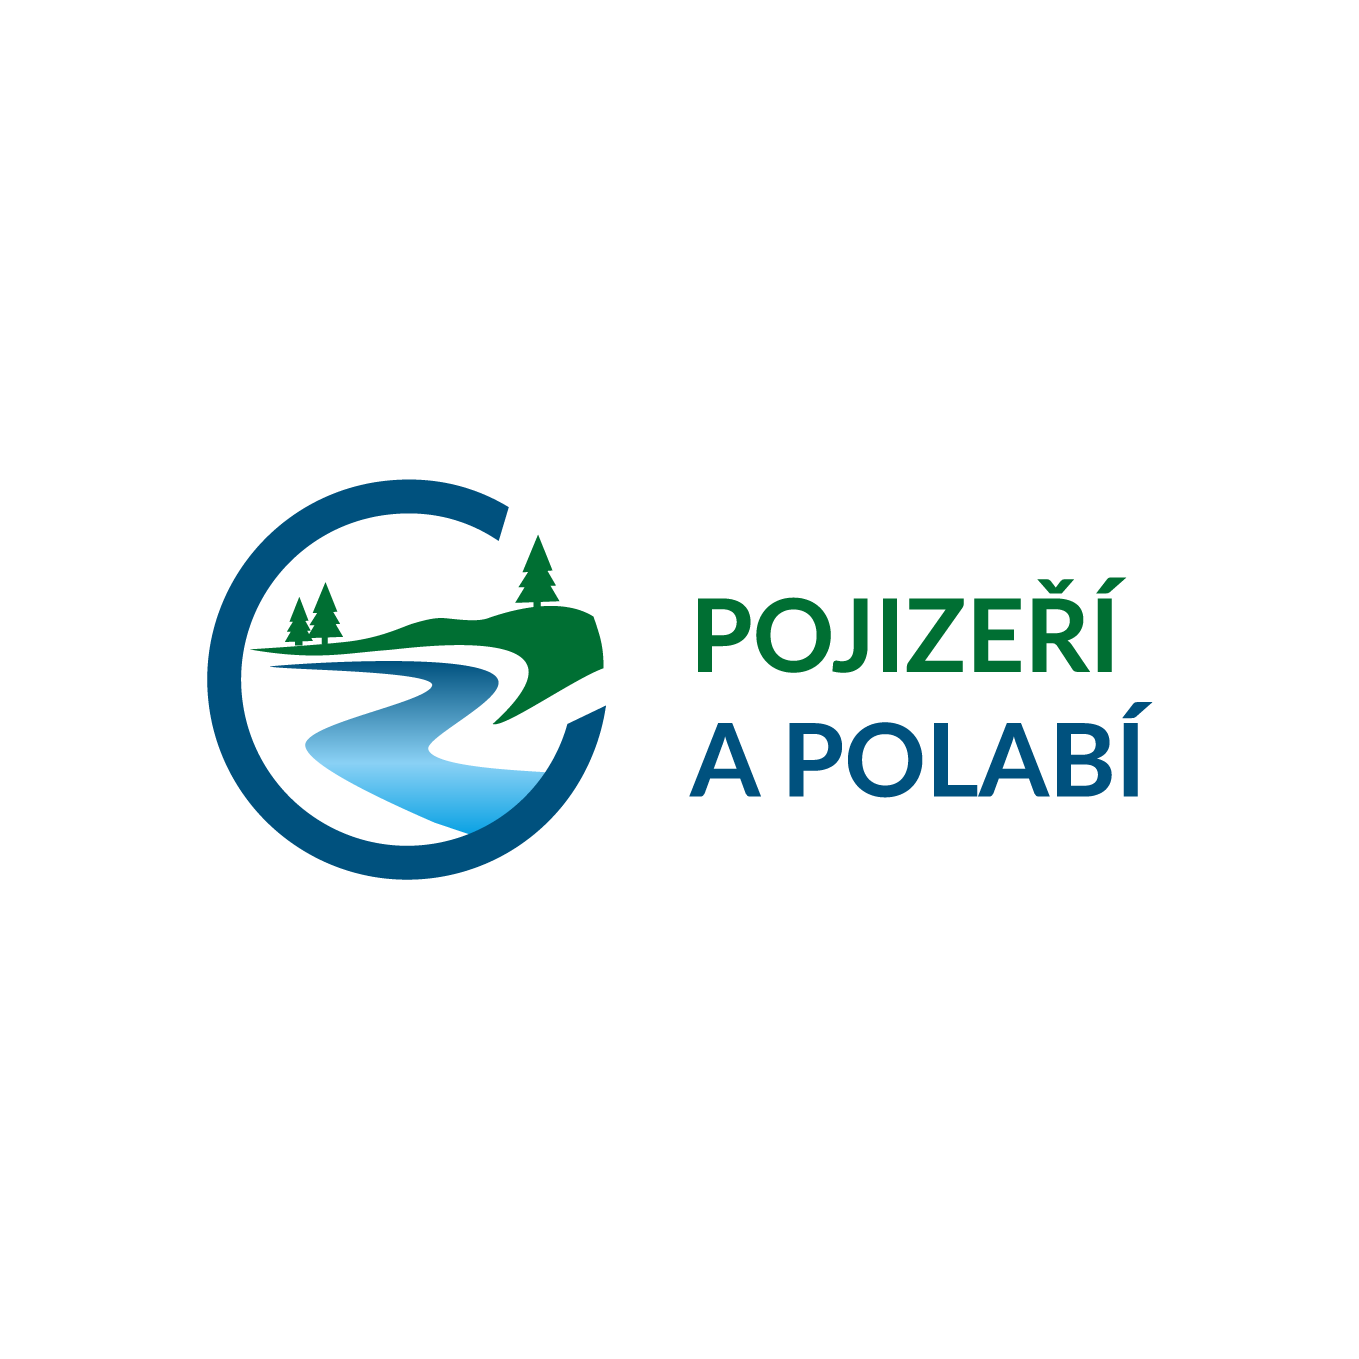 Mirakulum-Partneri-logo_Pojizeri_a_Polabi